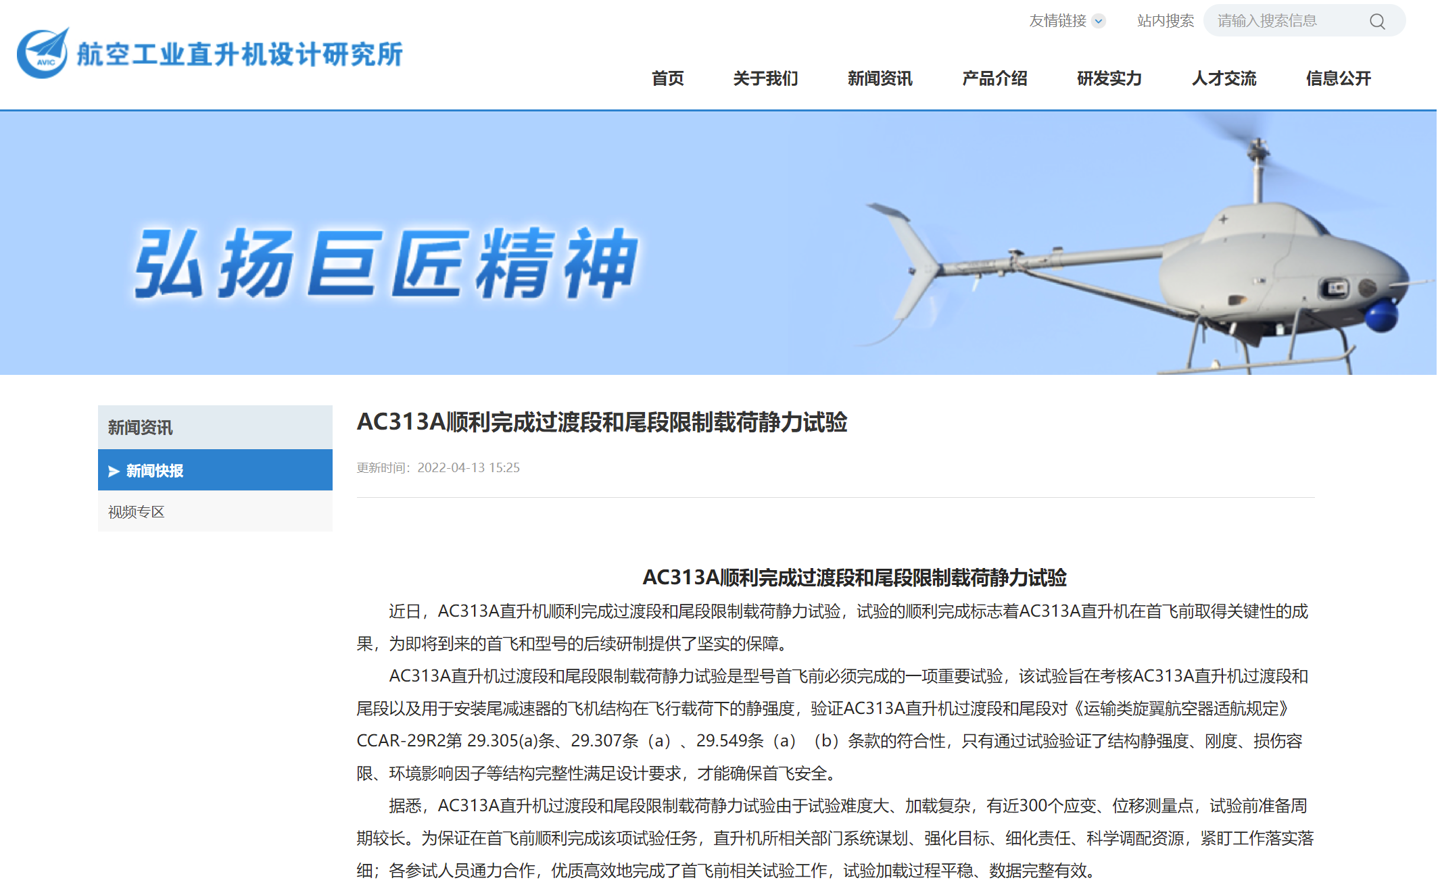 中国直升机设计研究所官网